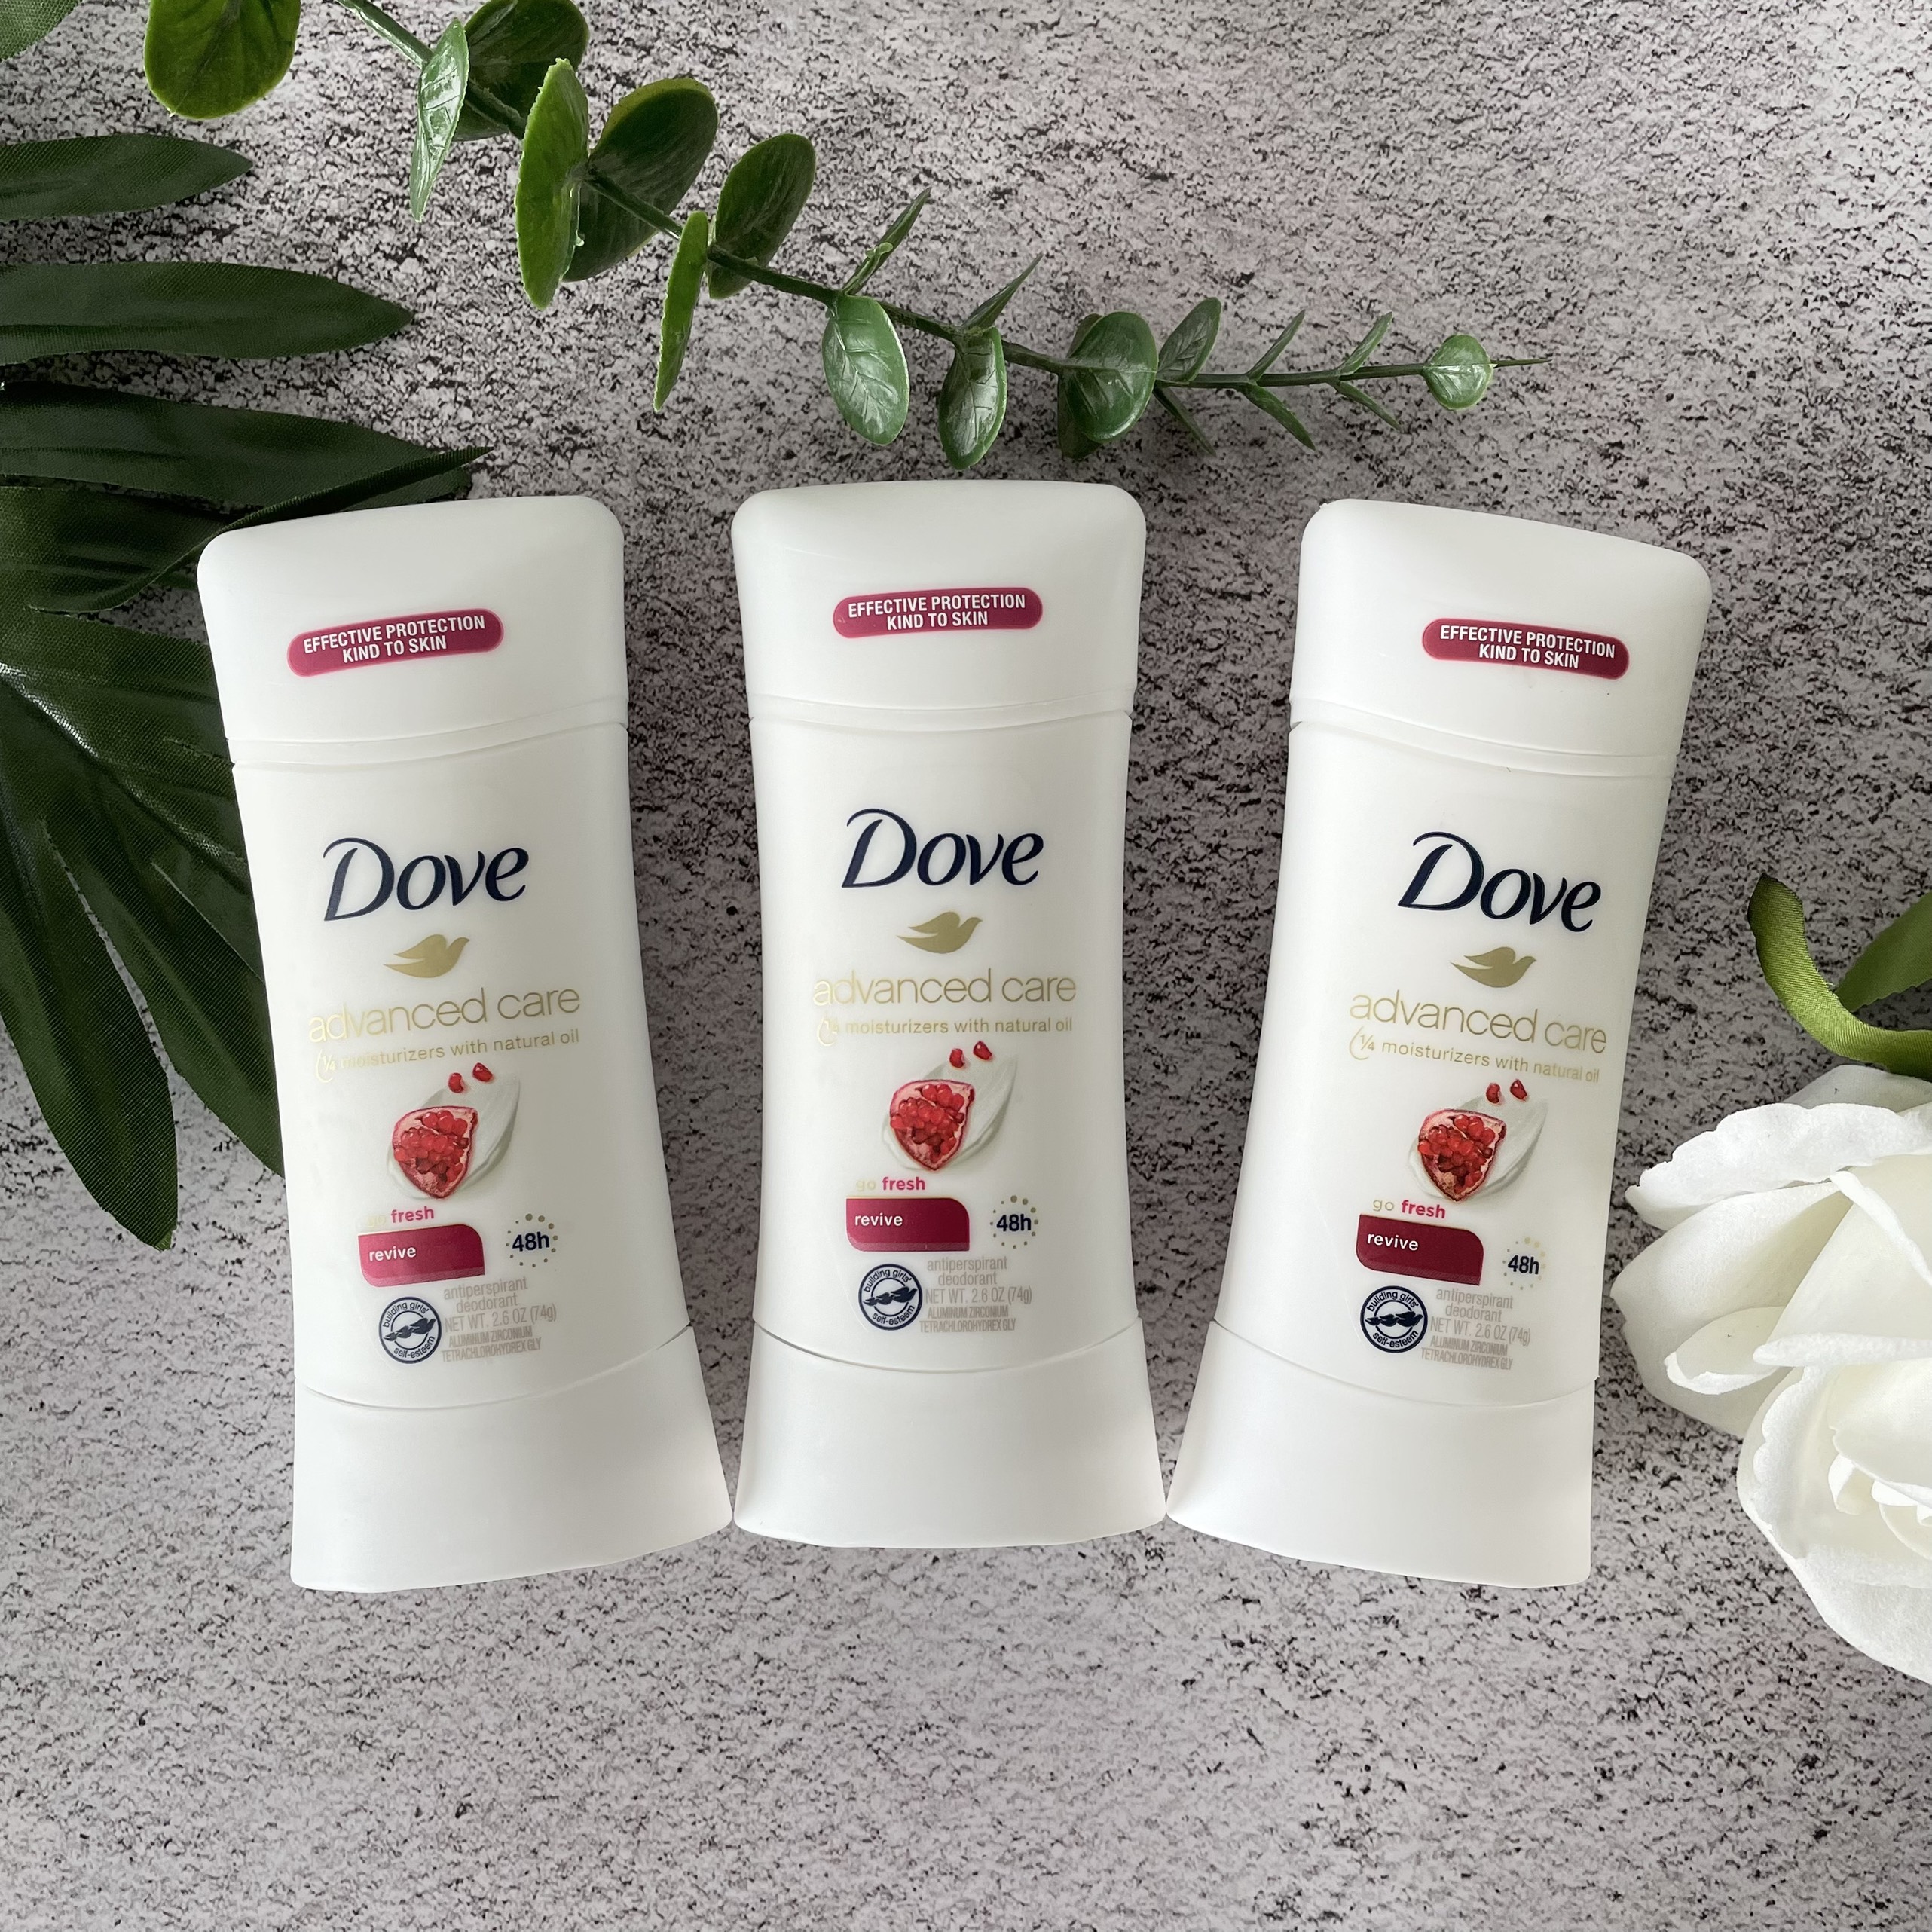 Lăn Khử Mùi Dove Advanced Care Go Fresh Revive 48h 74g Hàng Nhập Mỹ